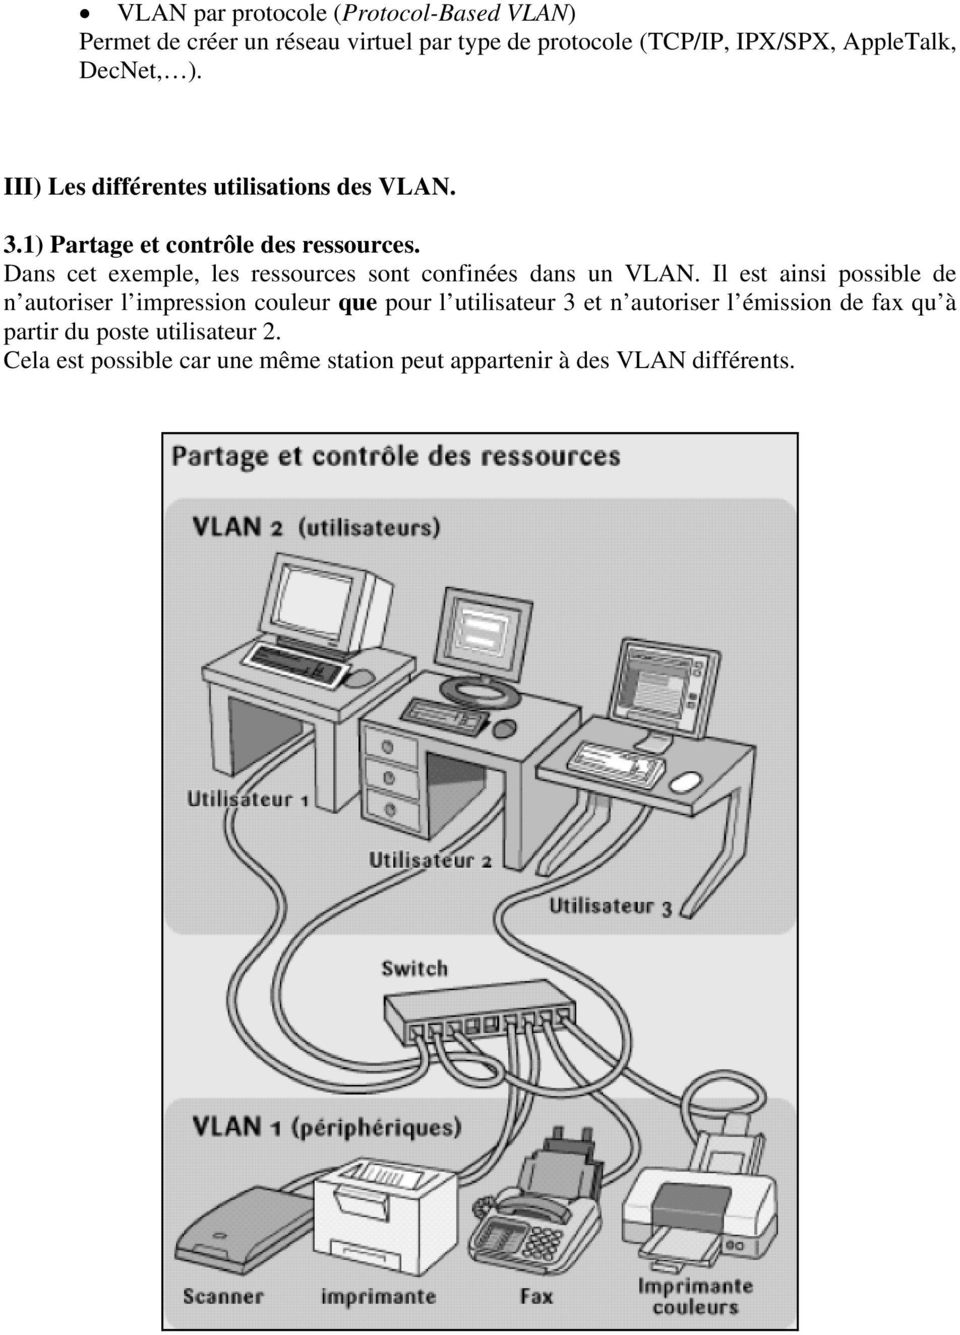 Dans cet exemple, les ressources sont confinées dans un VLAN.